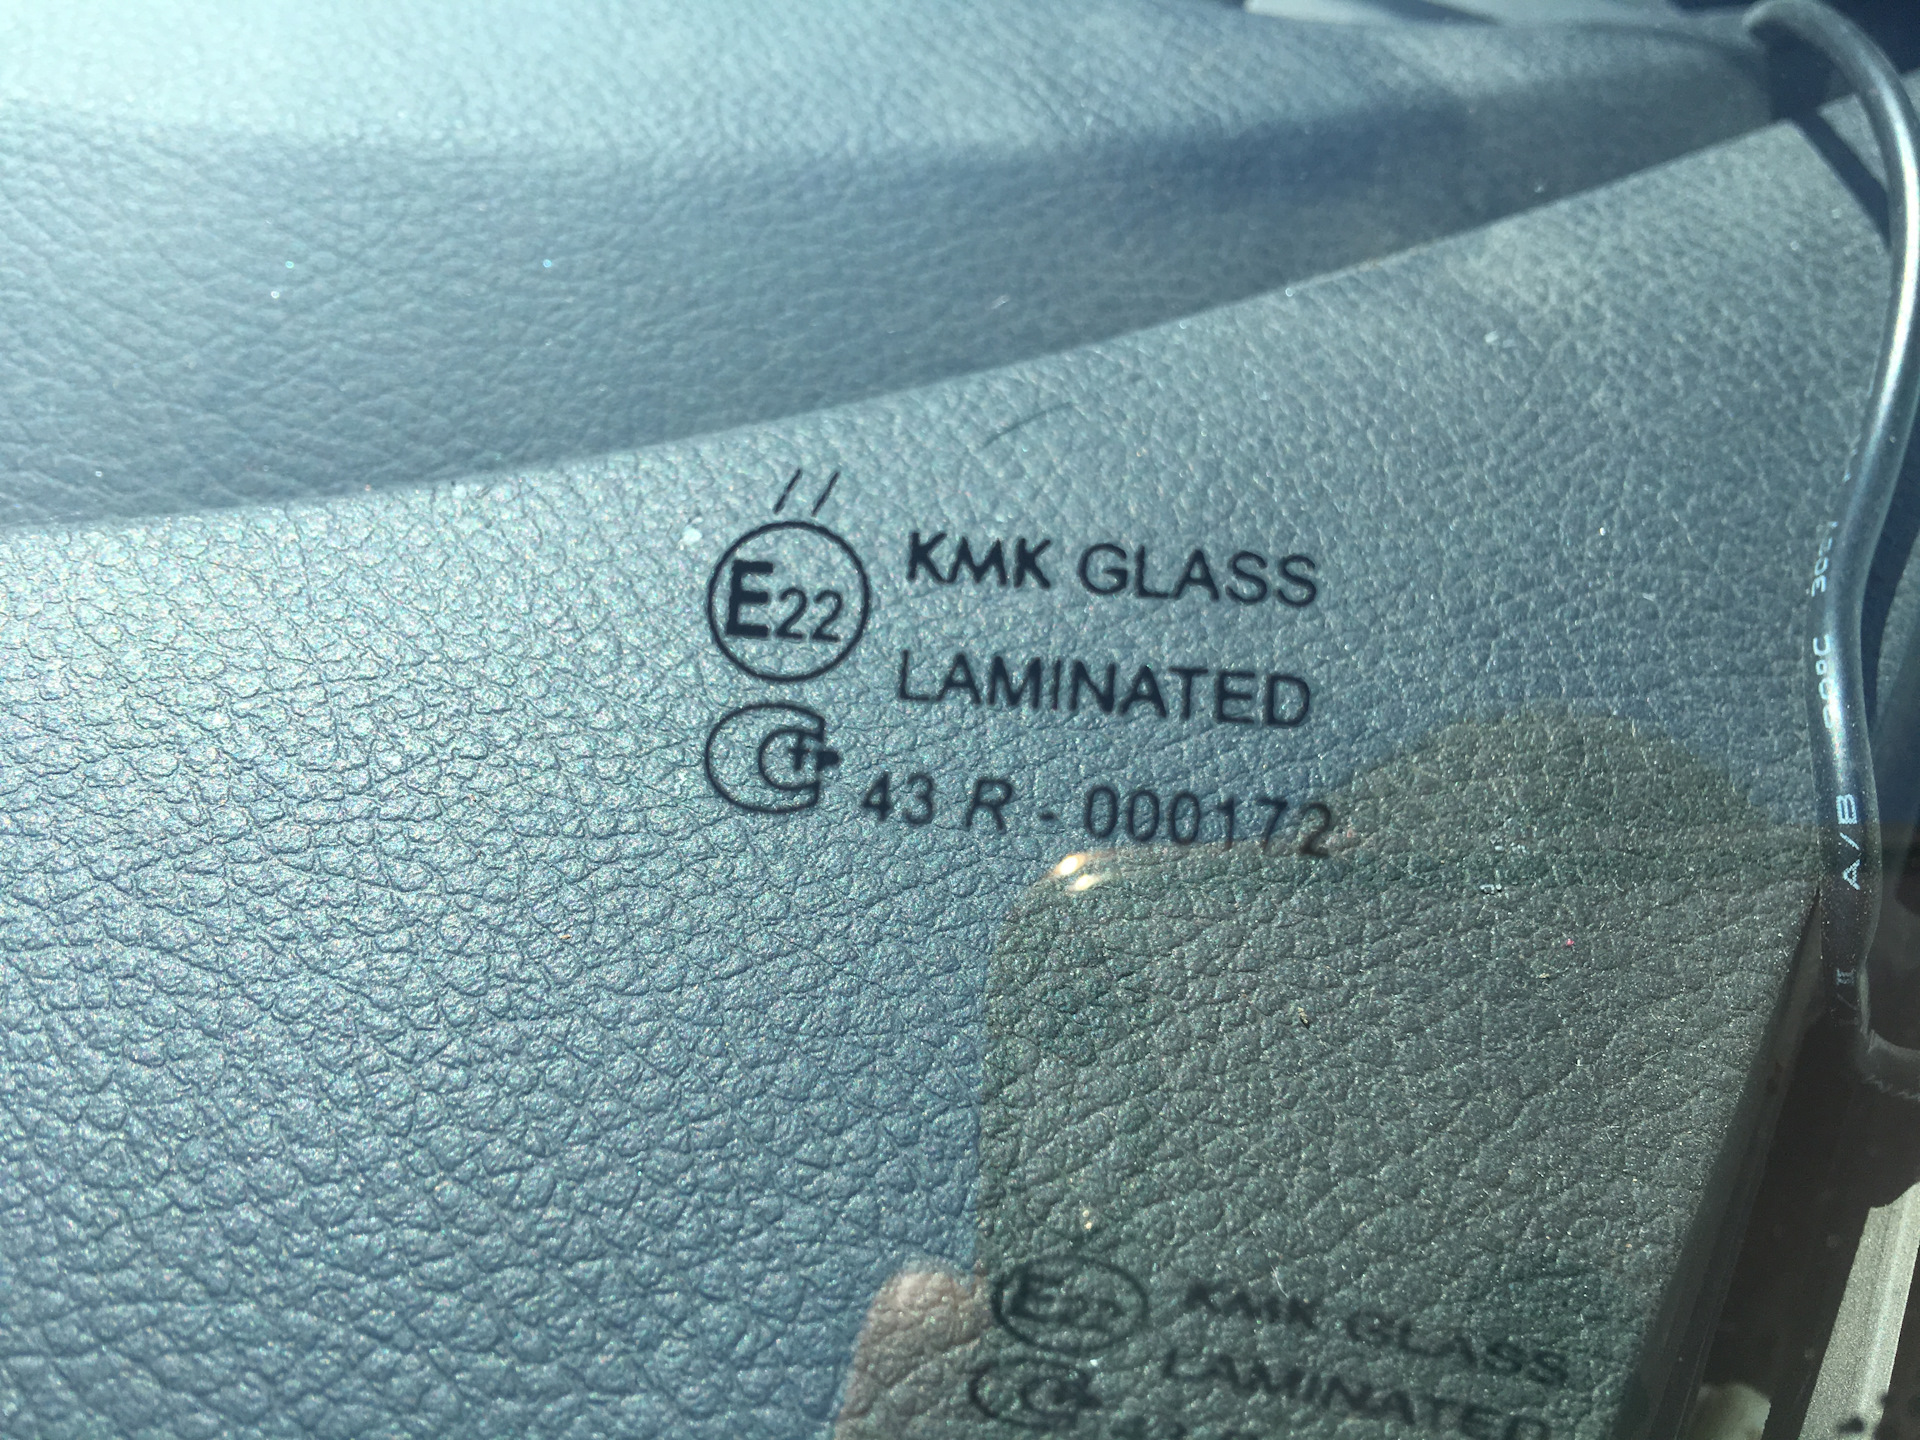 Стекло кмк производитель. KMK Glass Laminated 43r 000171. KMK Glass vazs0070. Маркировка стекла триплекс. KMK Glass 4166agngn.